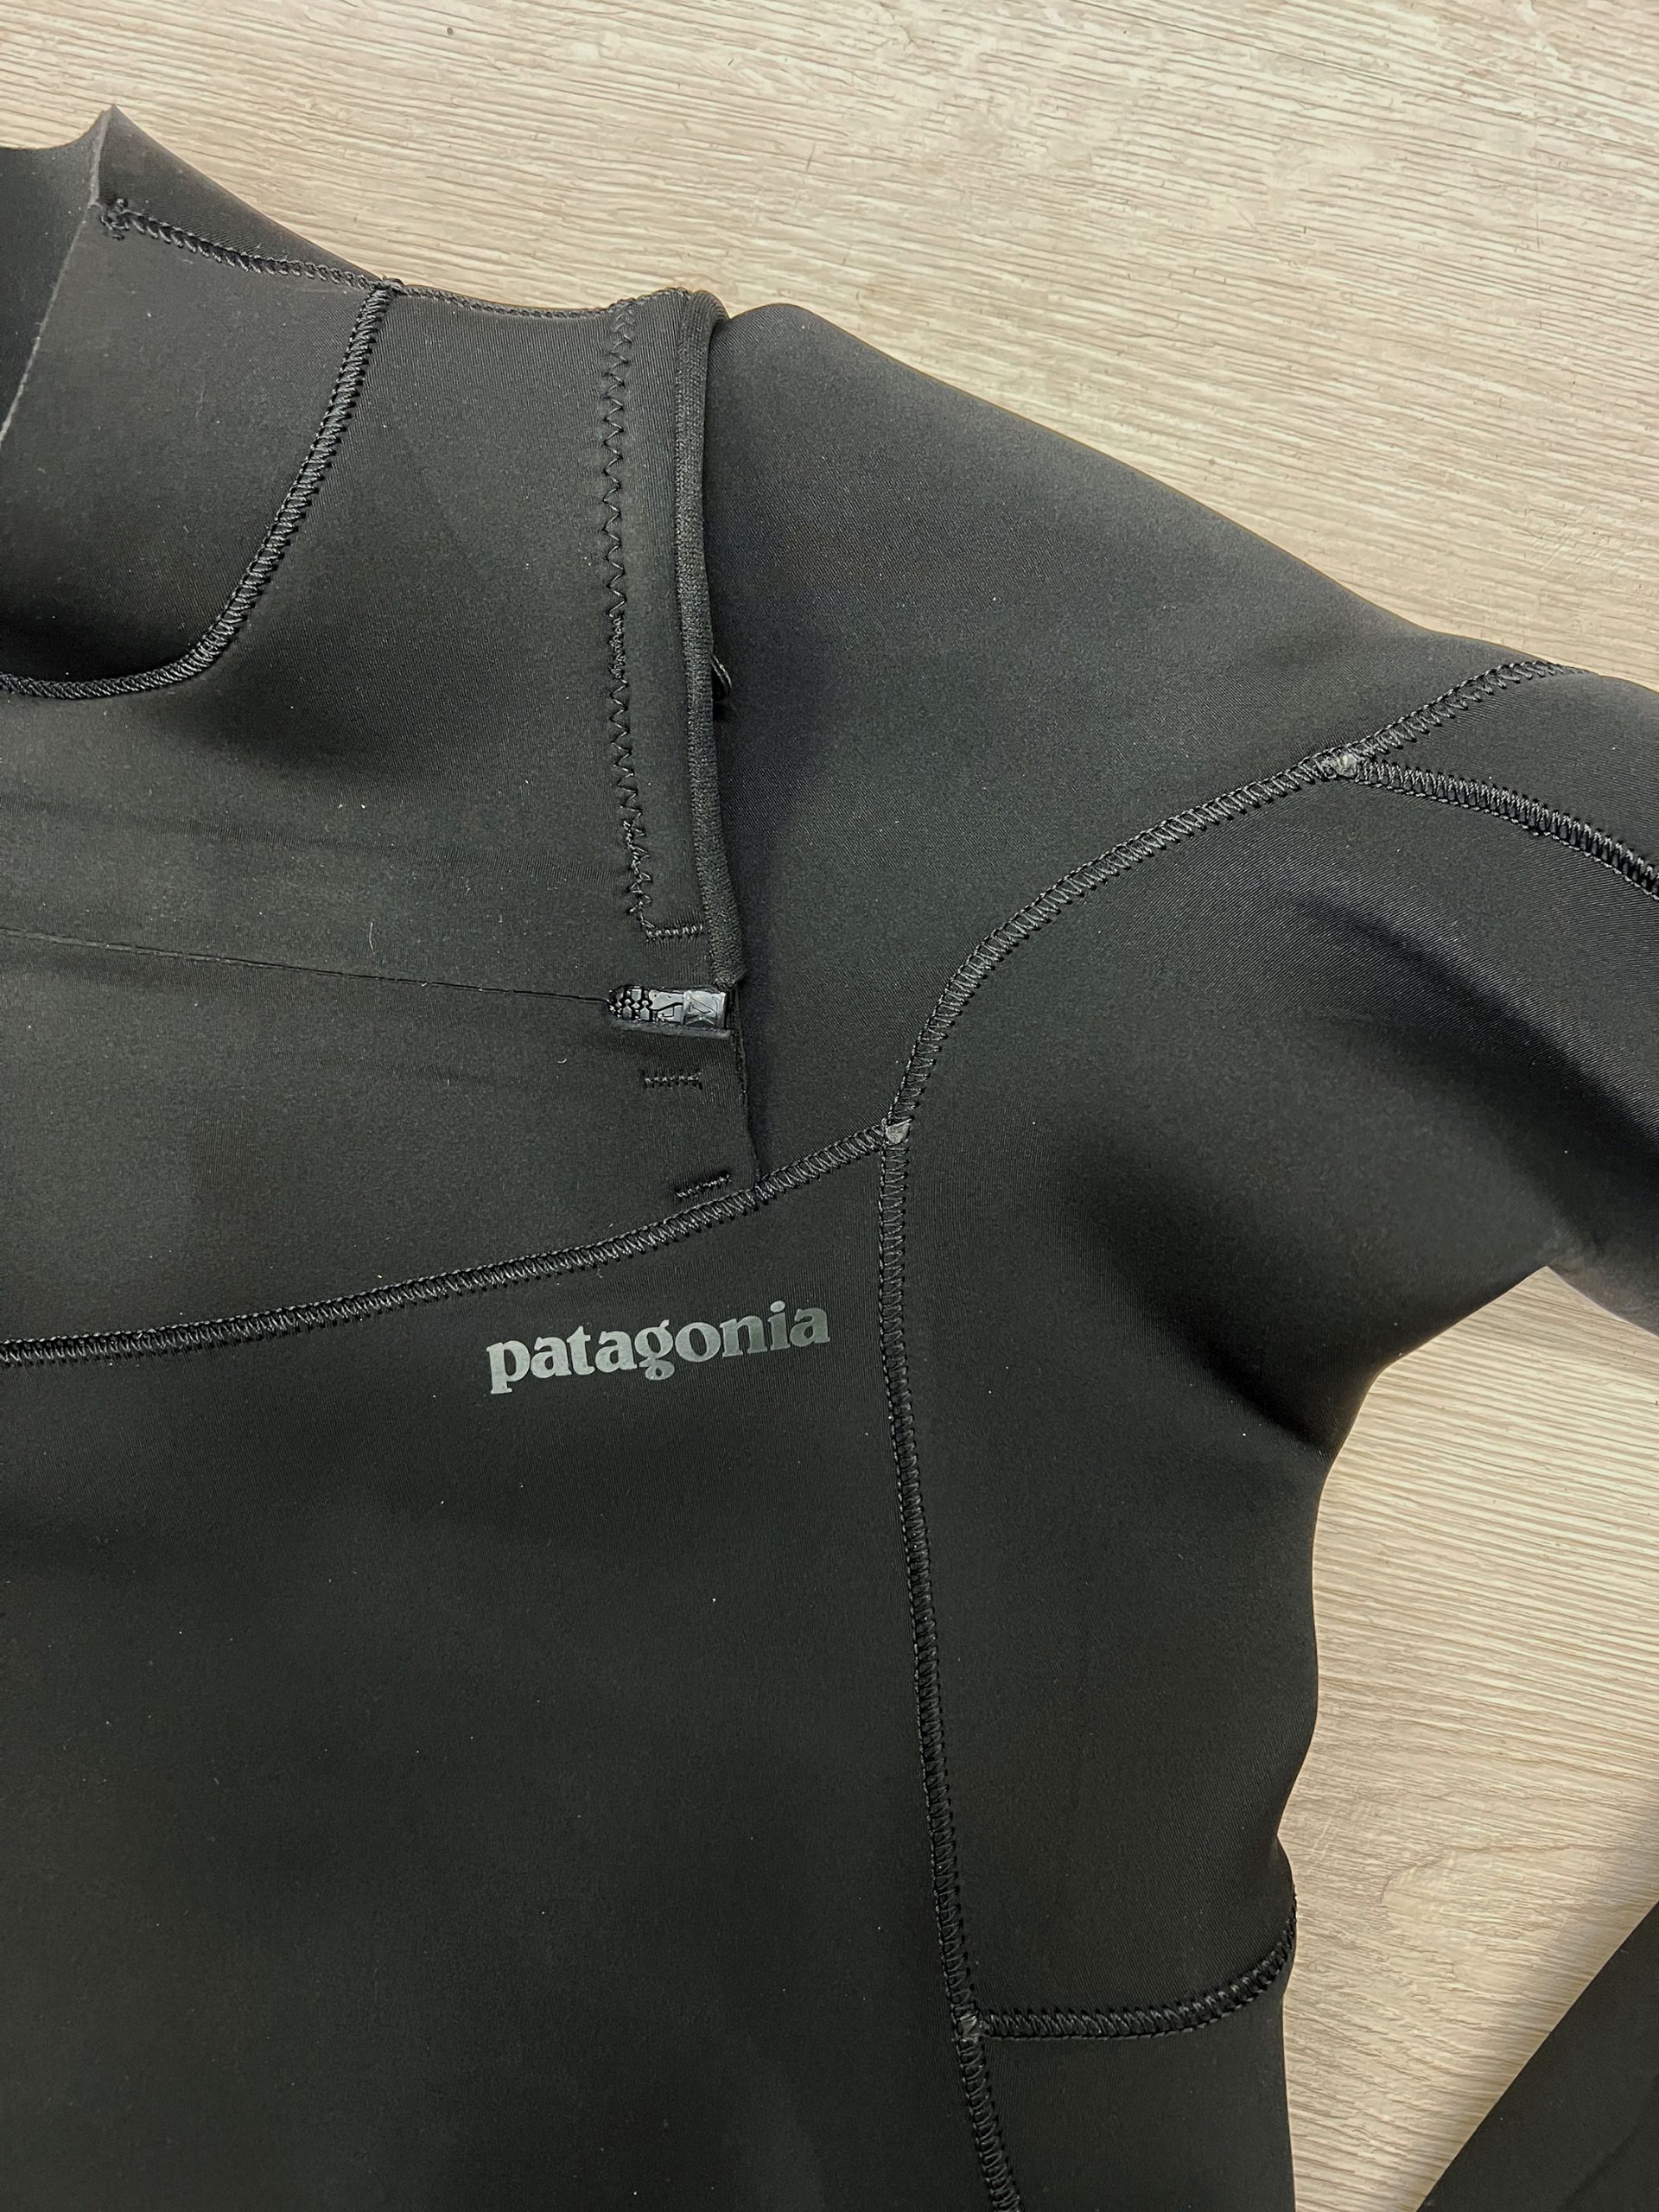 Patagonia Regulator Wetsuit Review